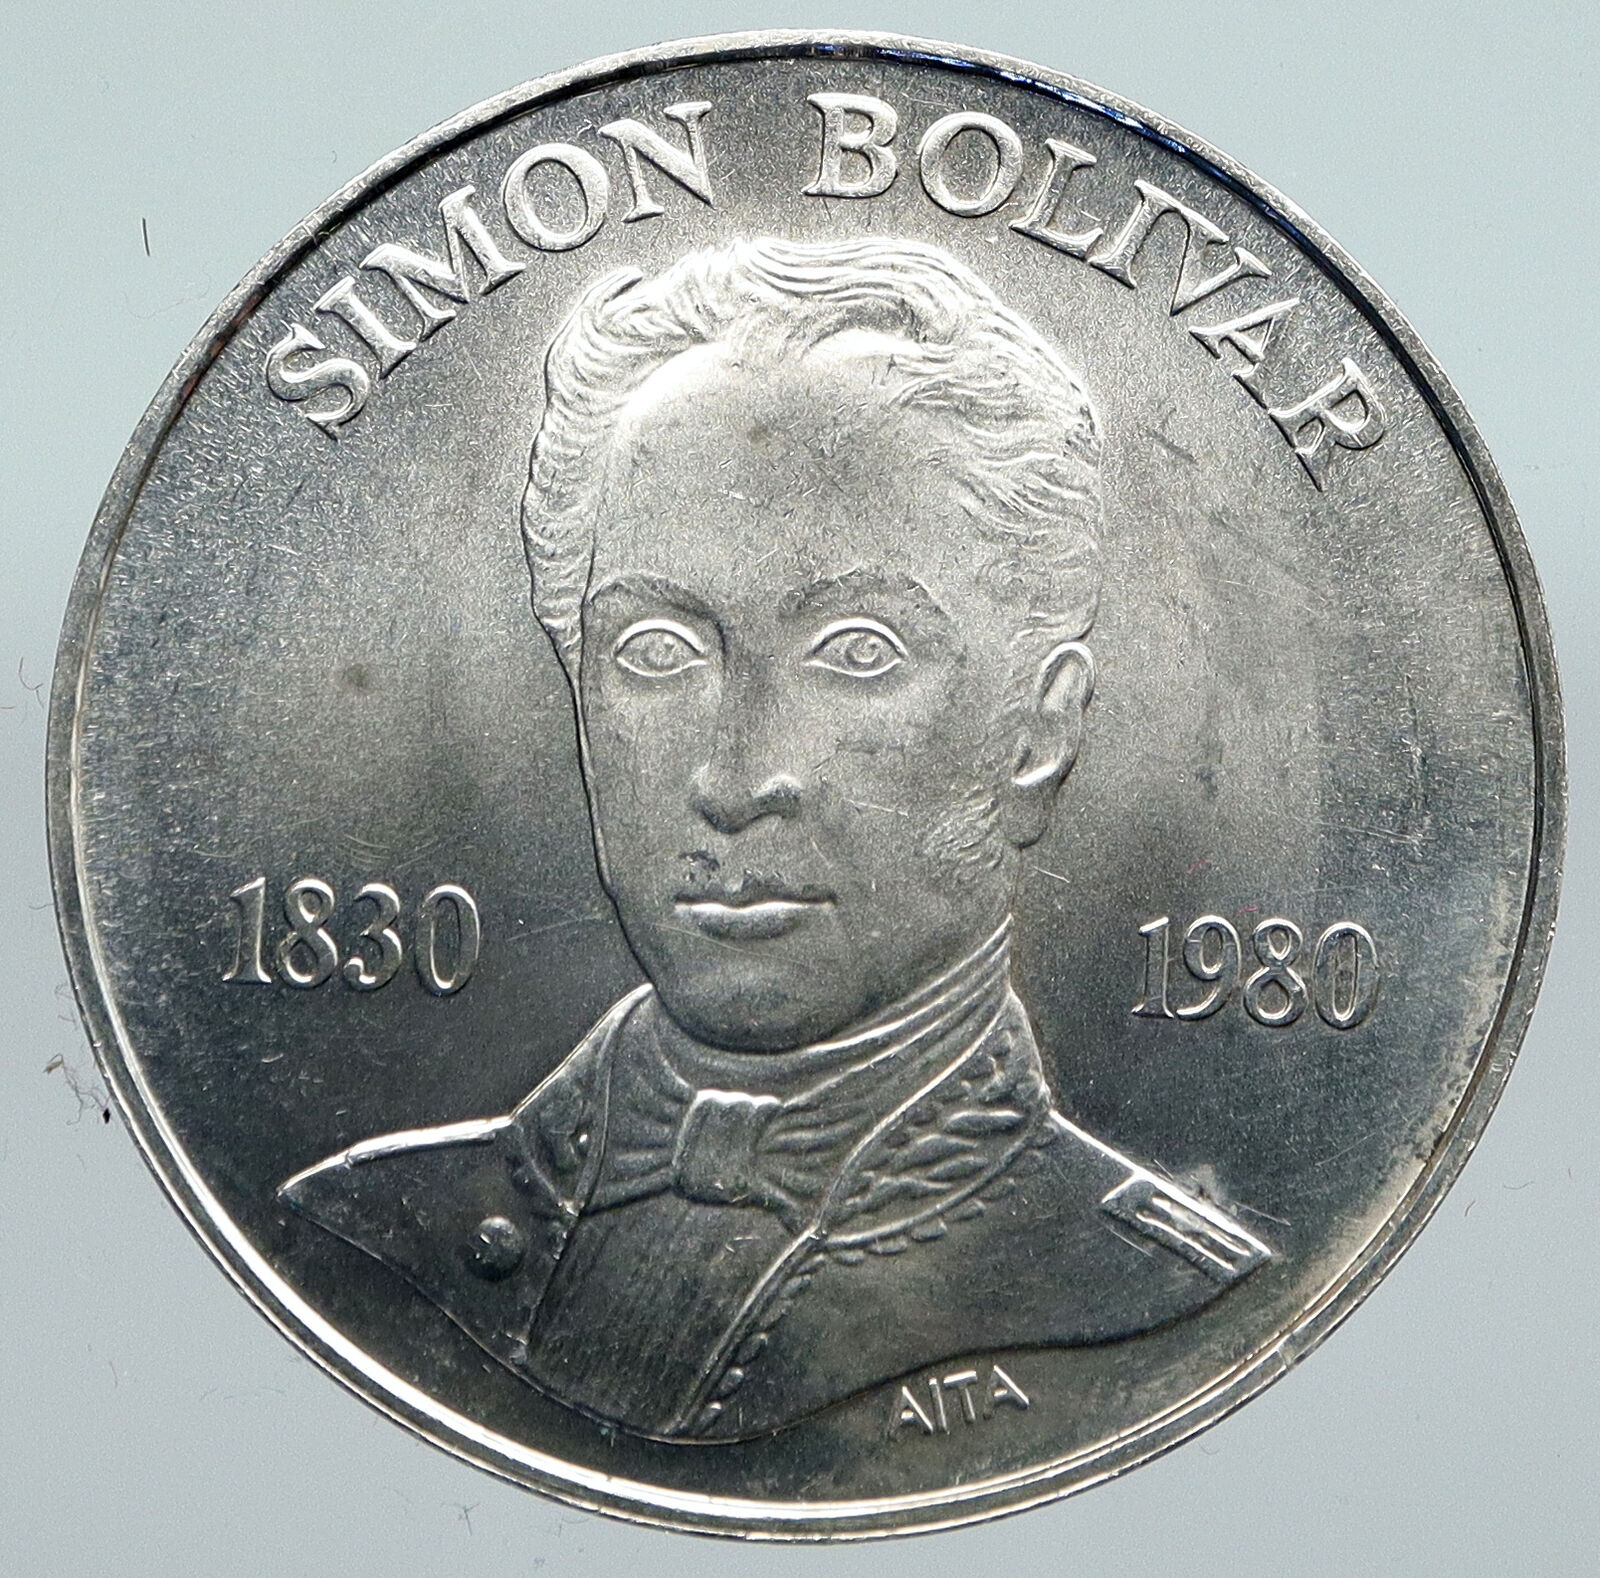 1980 Freemason President Simon Bolivar VENEZUELA Founder Silver 100 Coin i91400